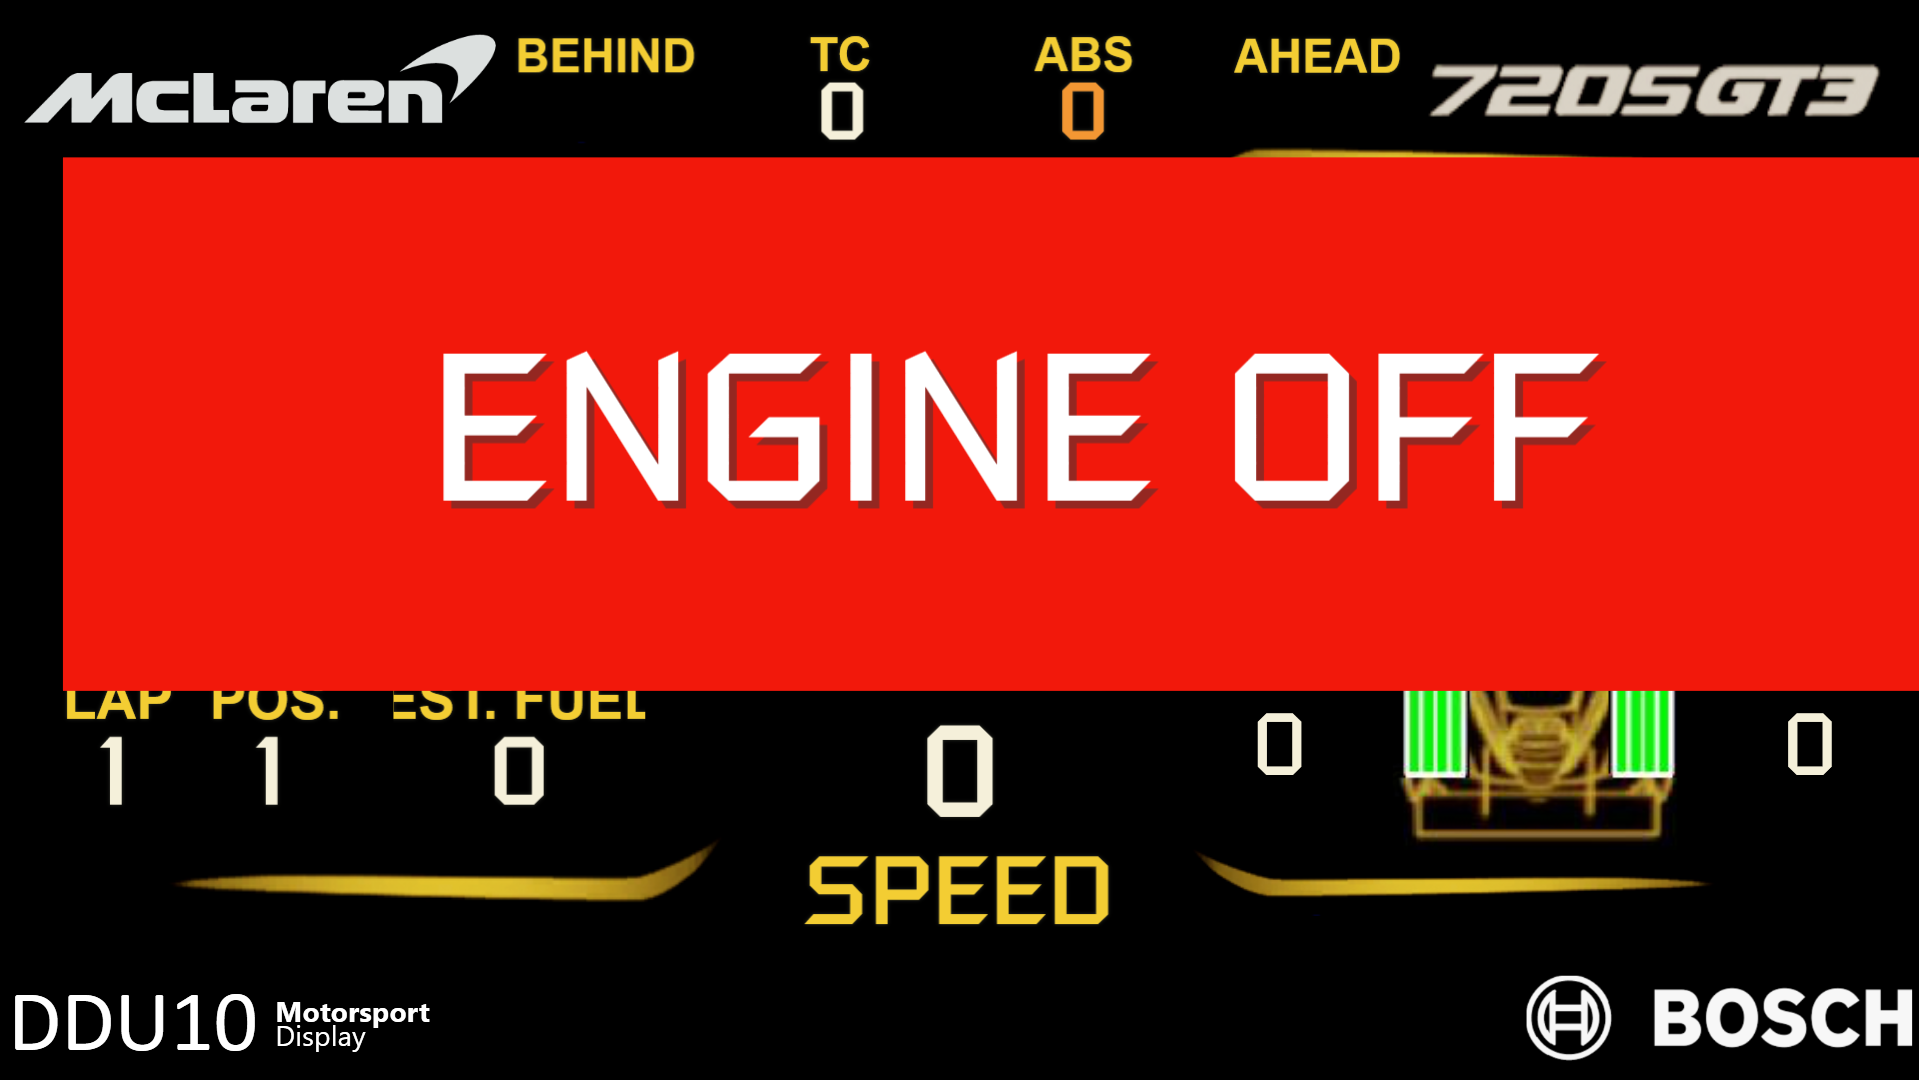 McLaren_engine_off.png